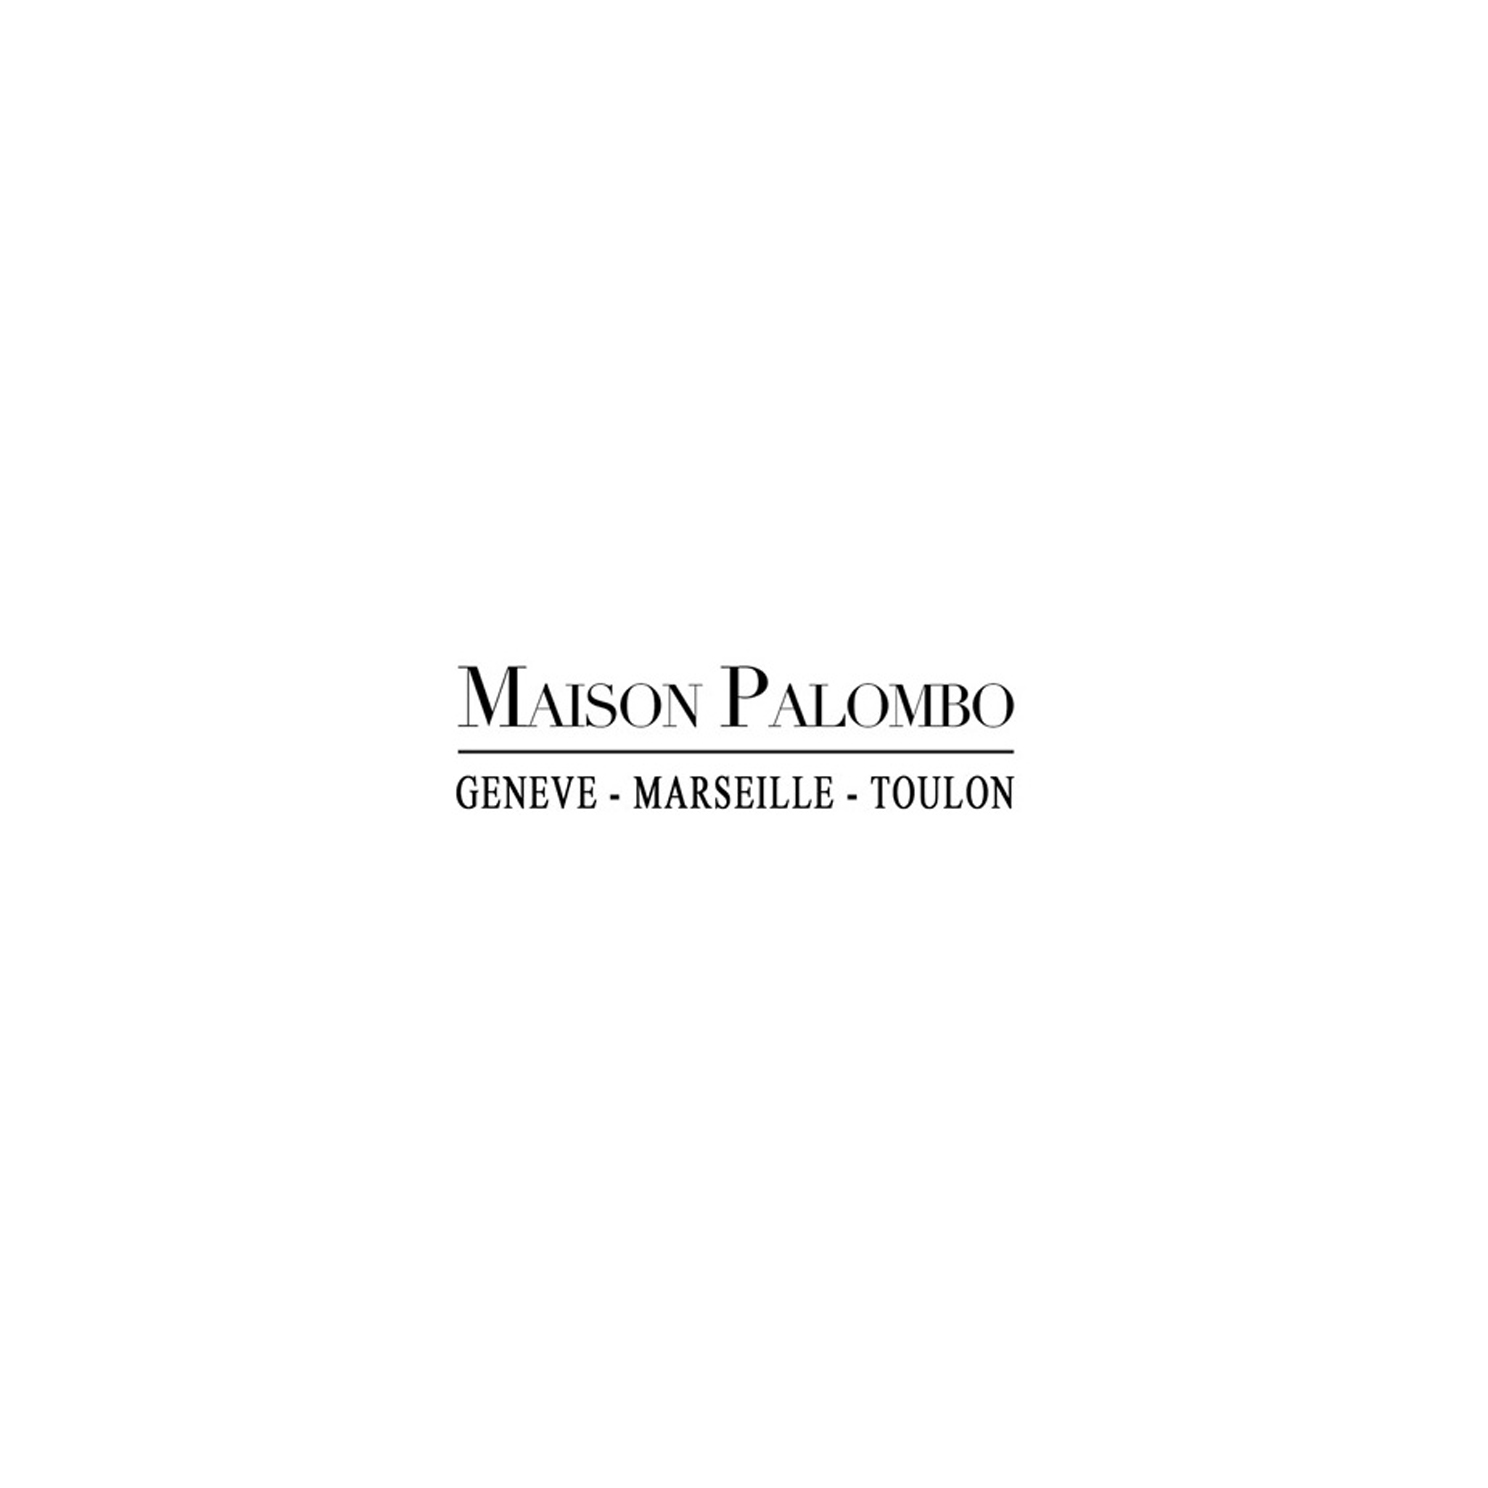 Vente aux enchères 1 - Maison Palombo - Palais de la Bourse Marseille